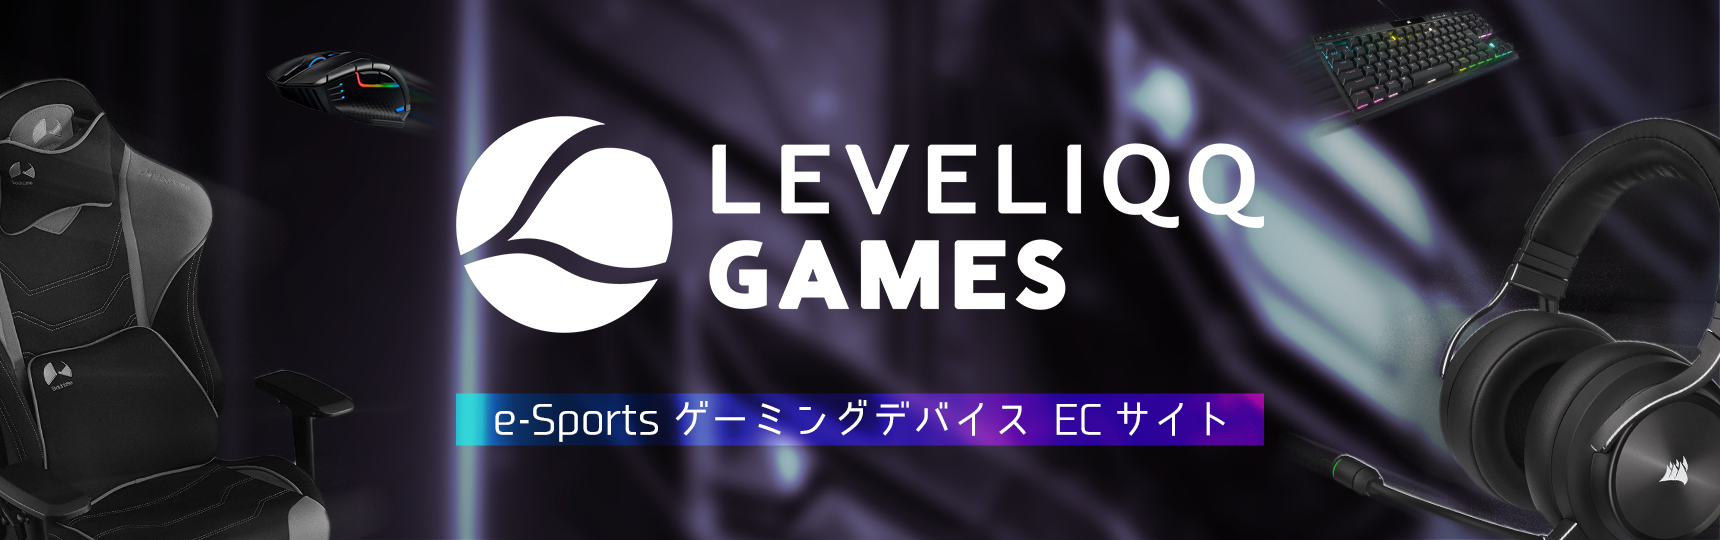 LEVELIQQ GAMES e-Sports ゲーミングデバイス ECサイト